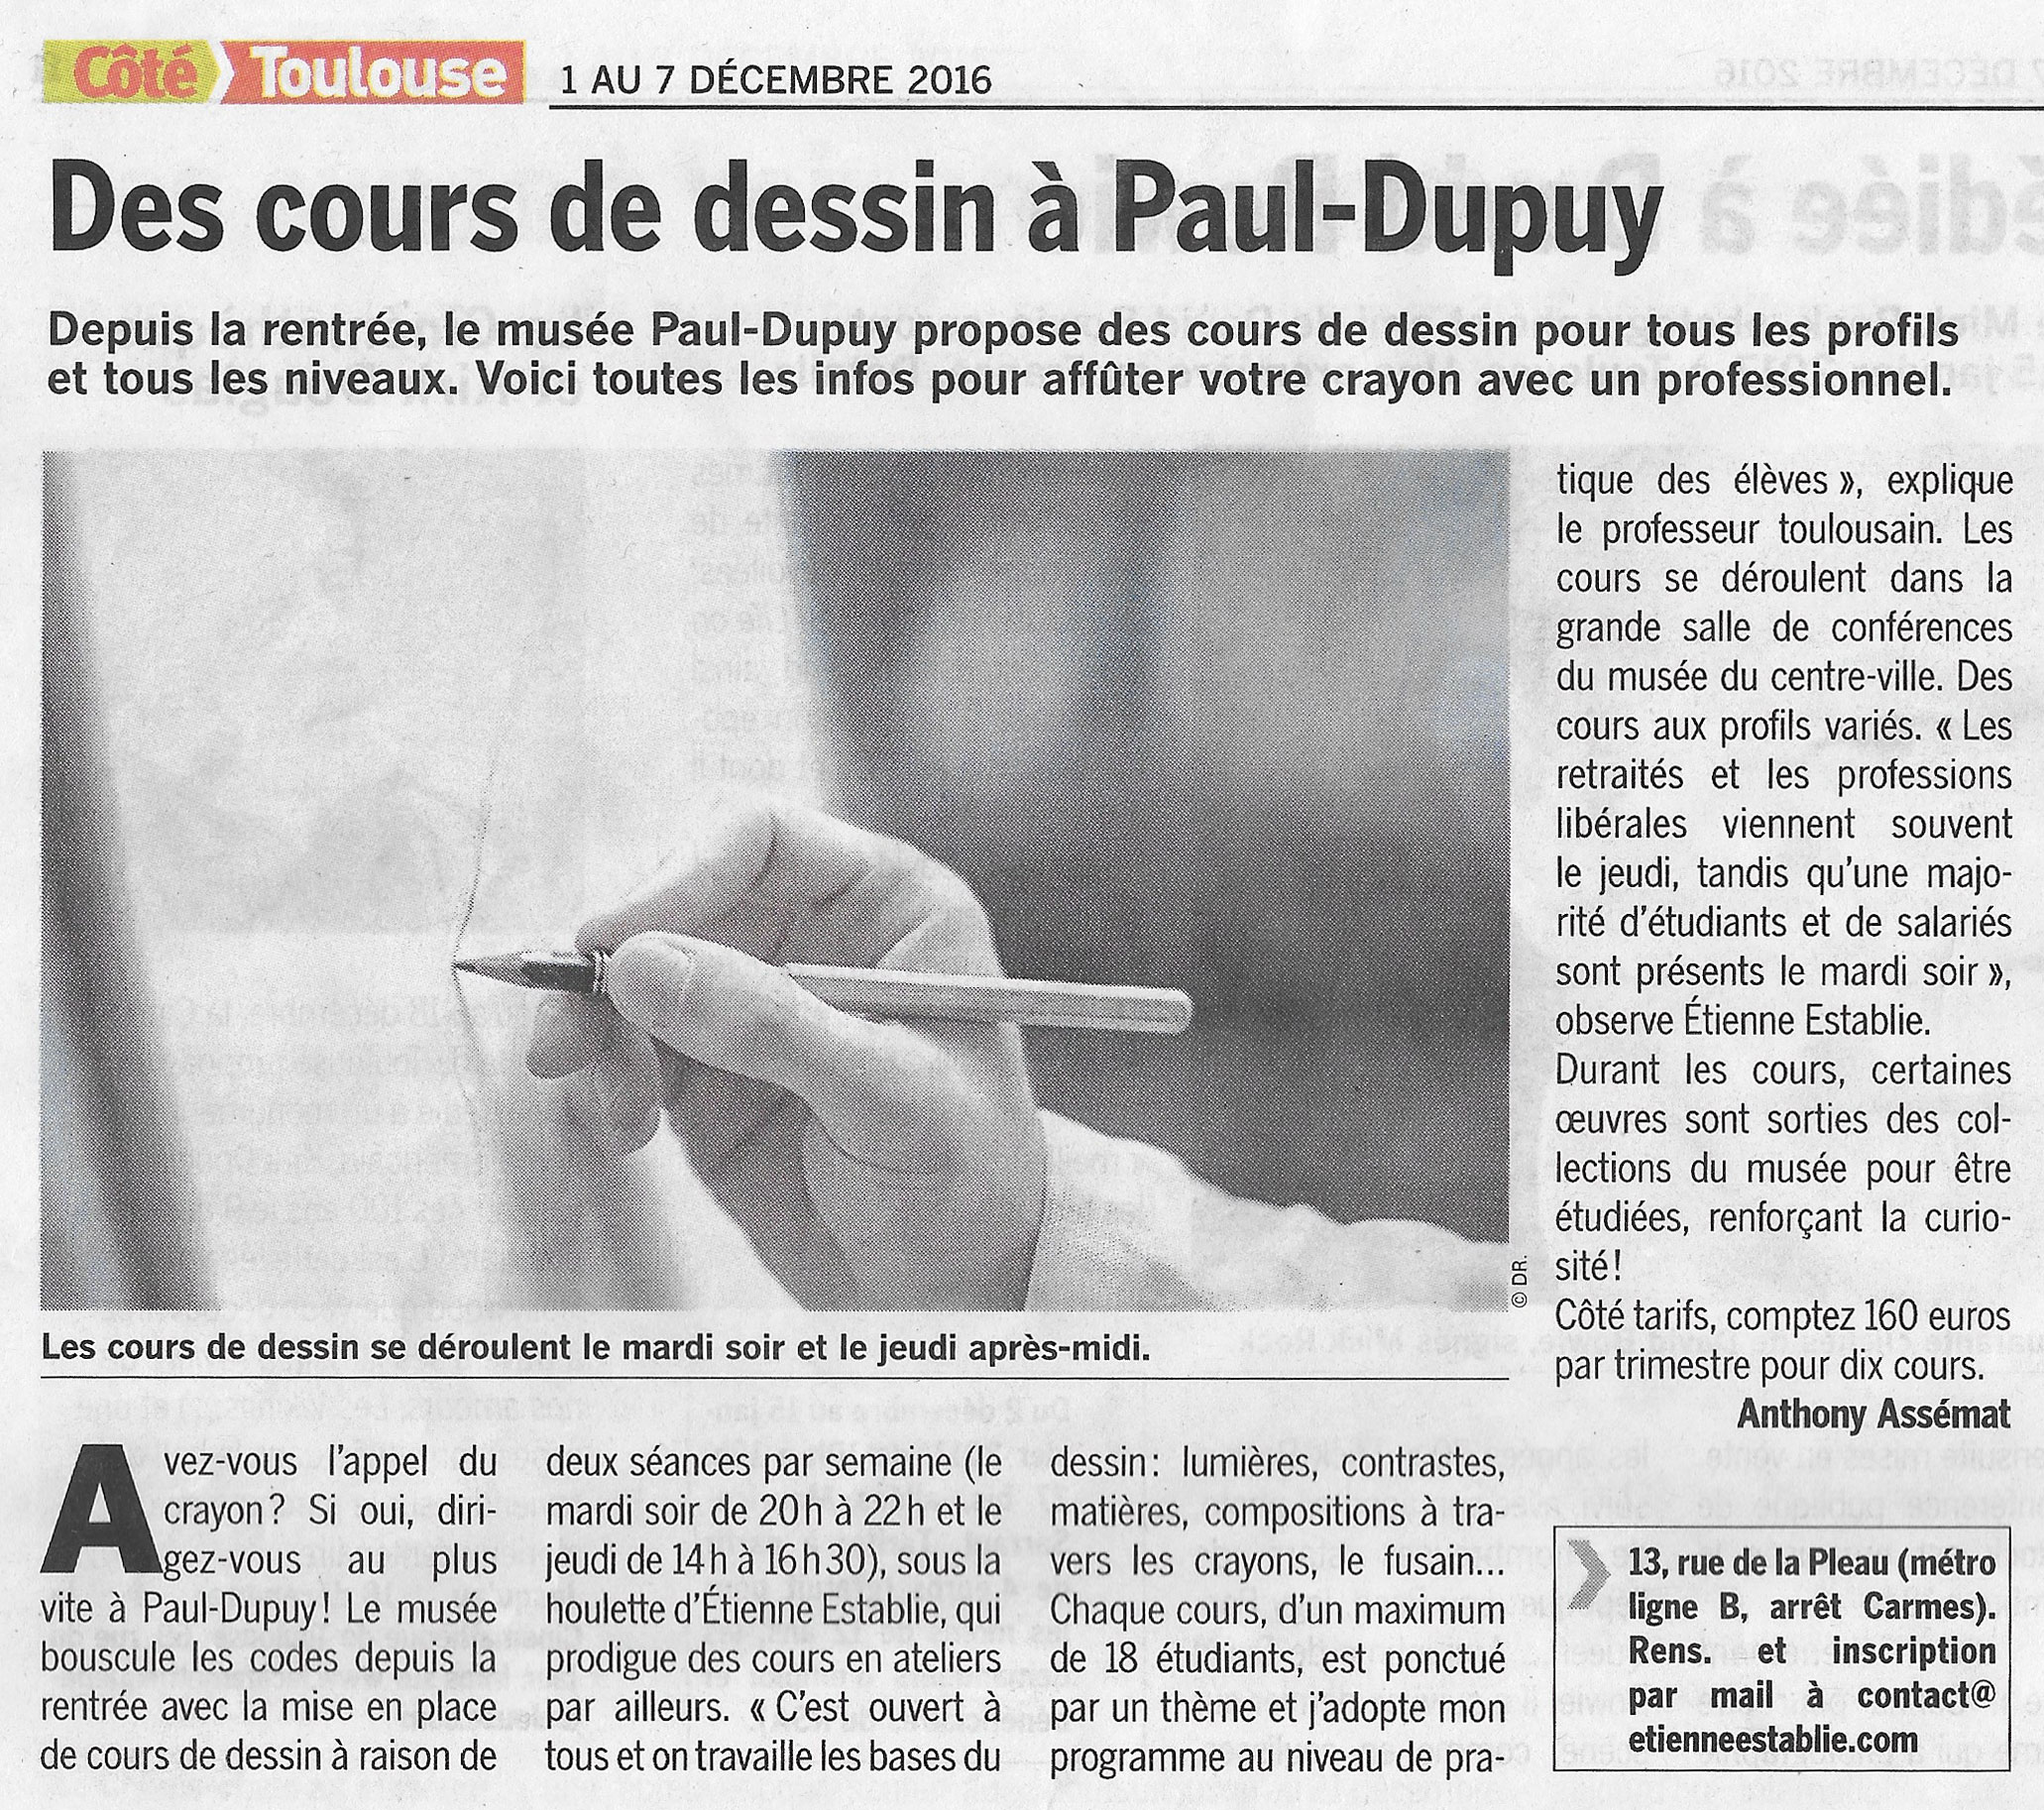 CôtéToulouse parle des cours de dessin du Musée Paul-Dupuy!